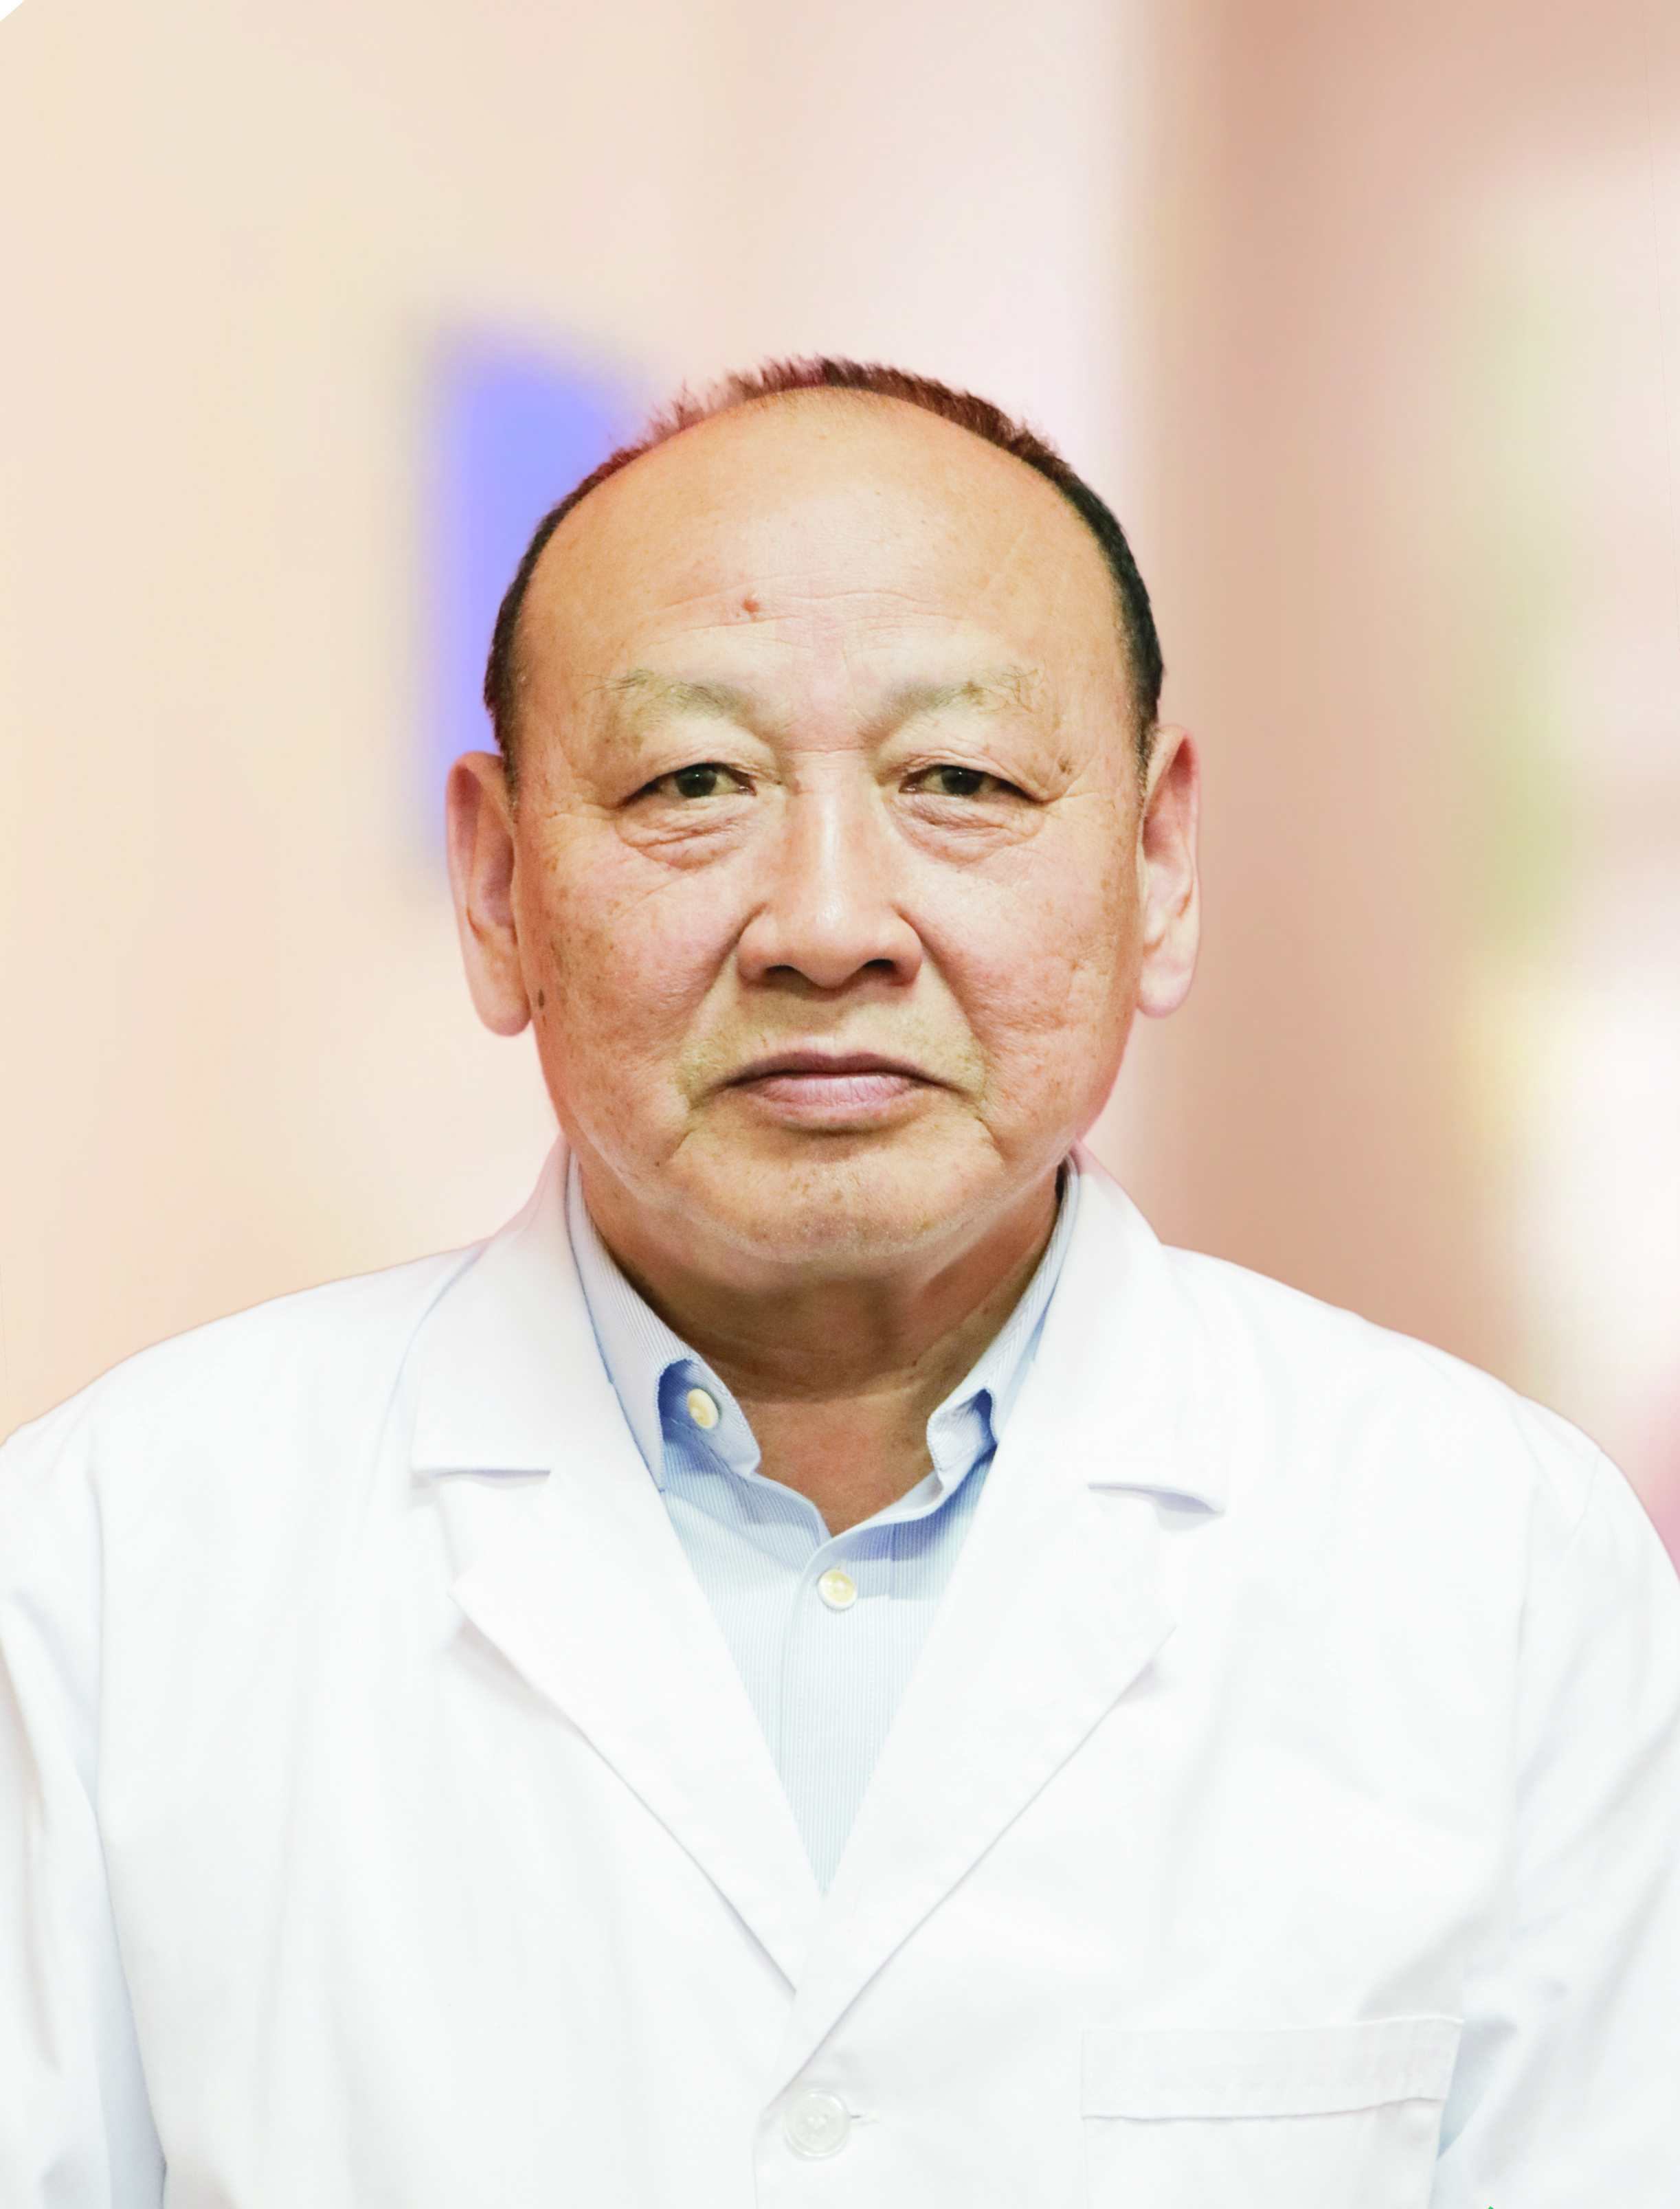 赵玉林 教授,主任医师,毕业于山东医科大学医学系,神经内科专业硕士